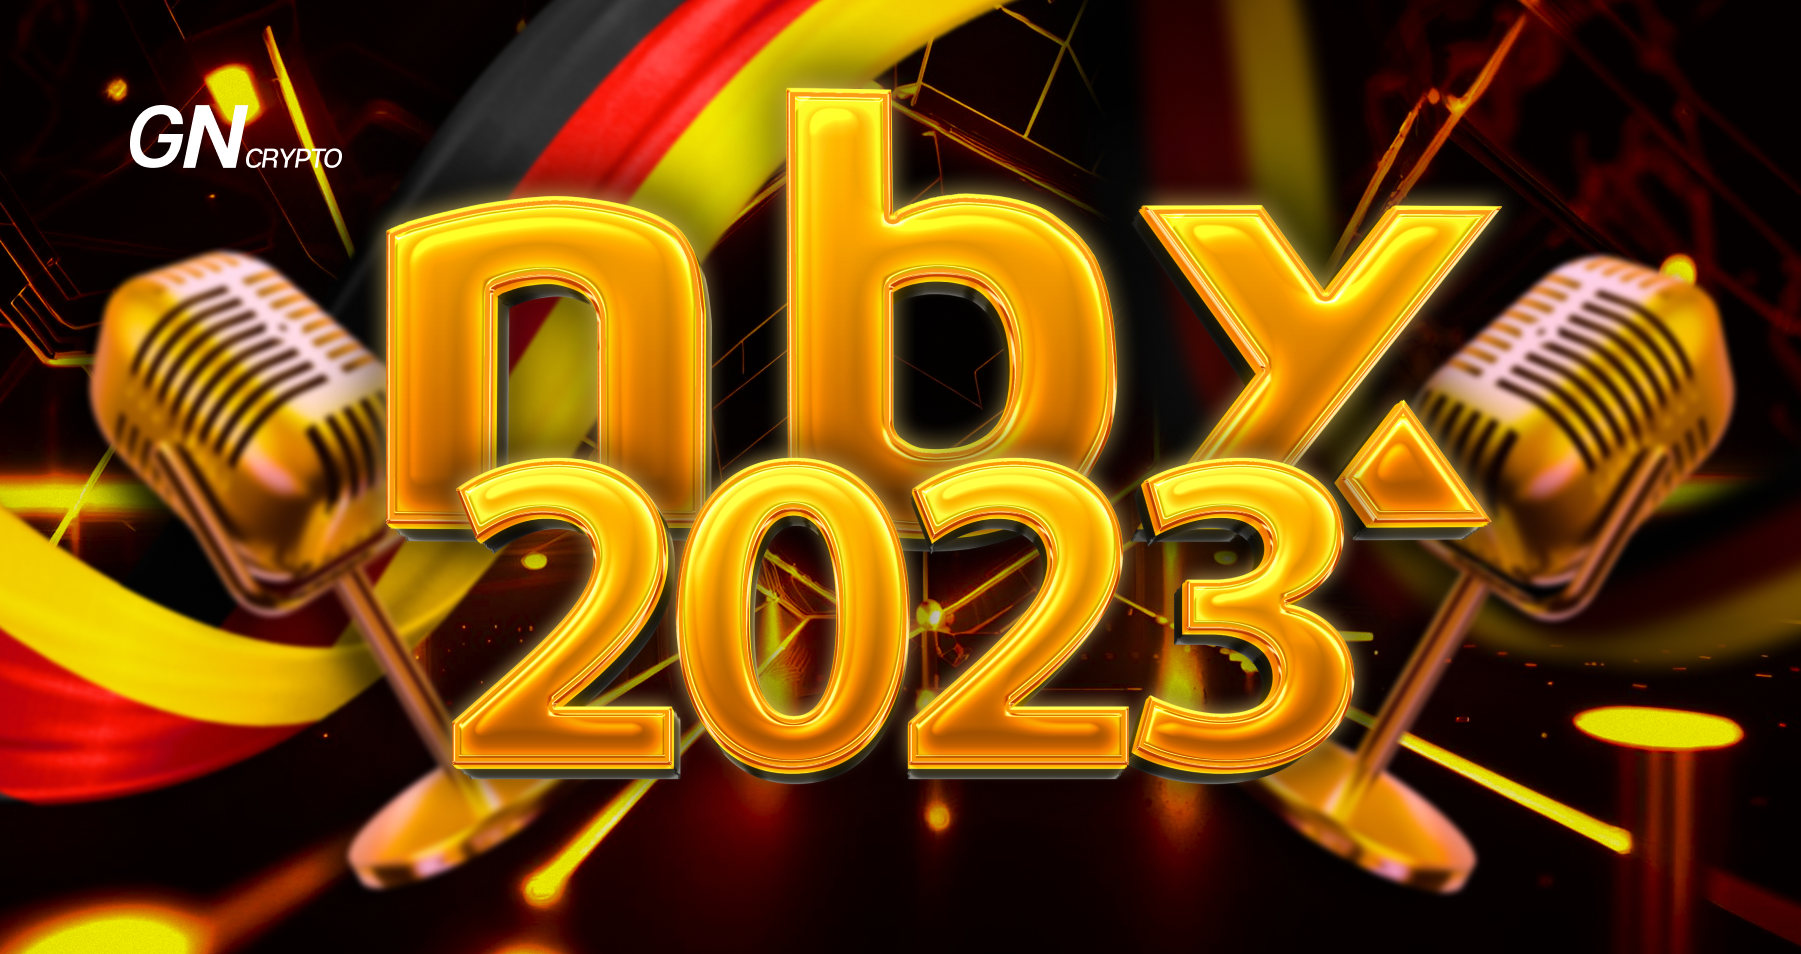 Next Block Expo 2023: Berlin Awaits